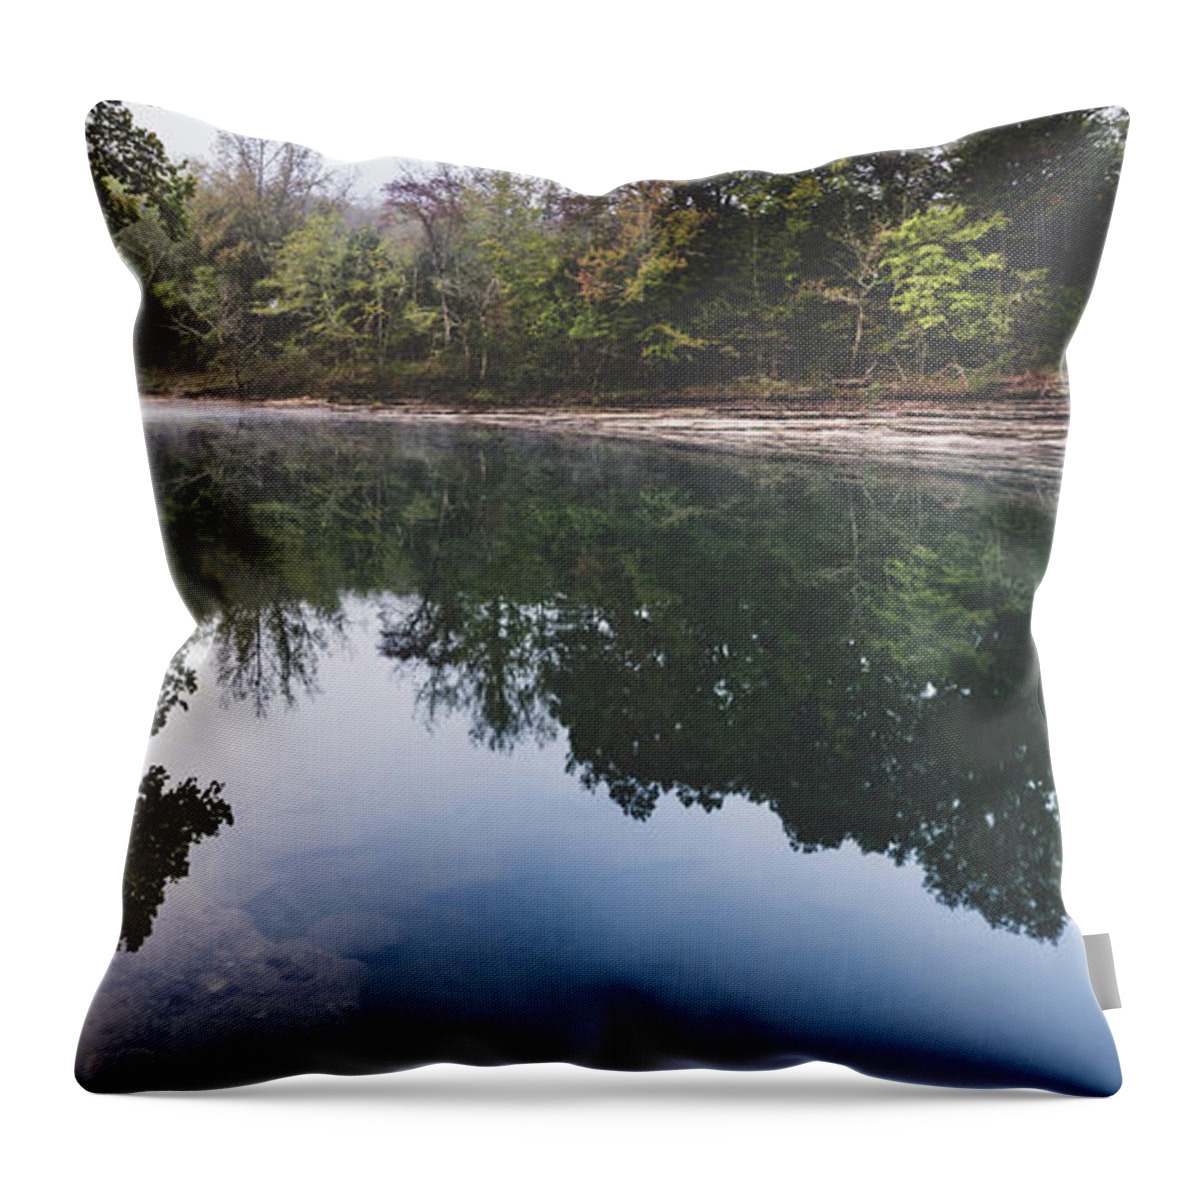 Arkansas Throw Pillow featuring the photograph arkansas River panorama 1 by Mati Krimerman